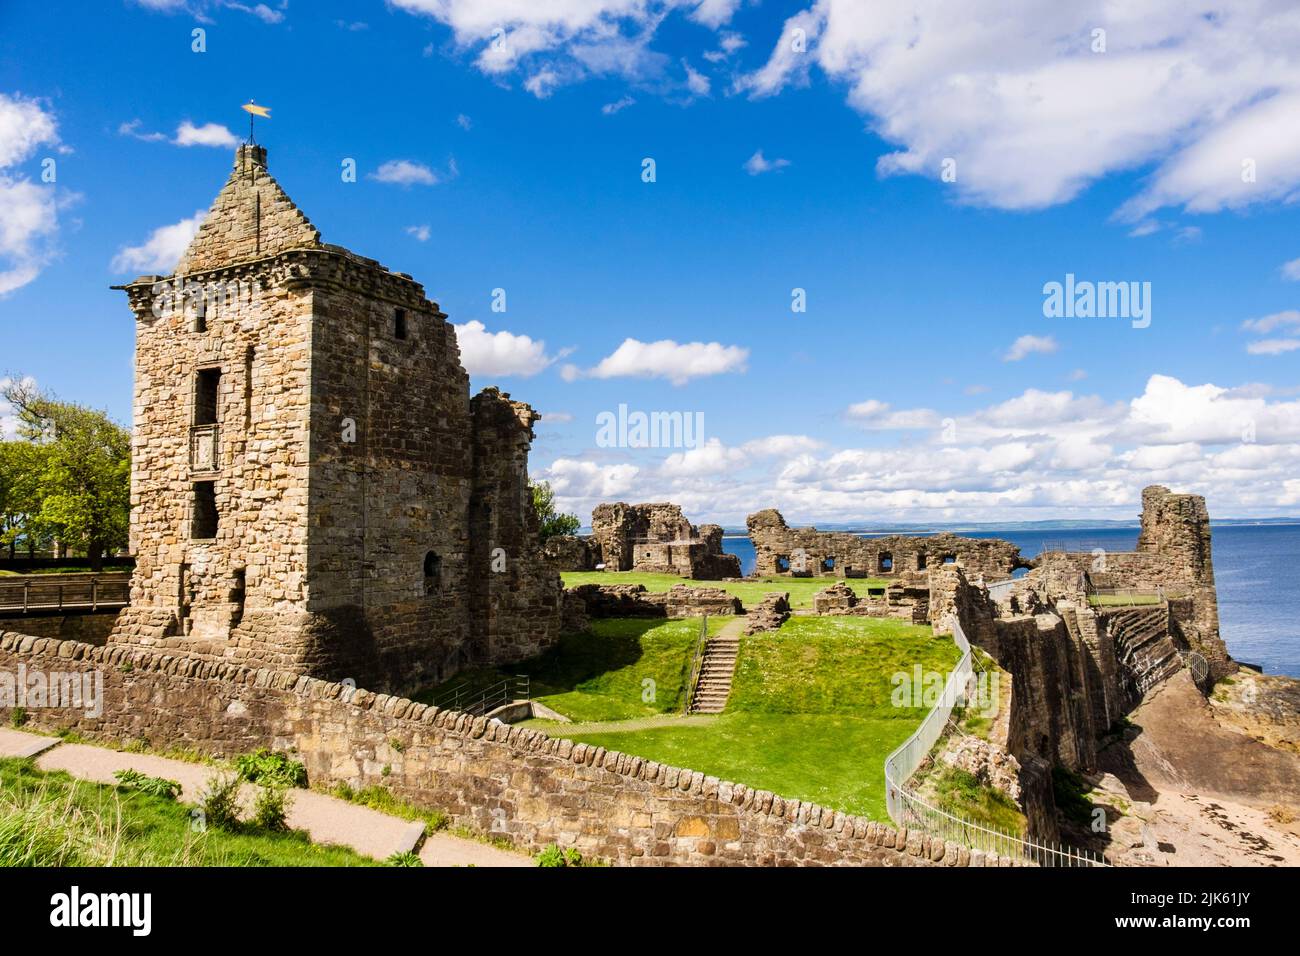 St Andrews le rovine del castello di motivi e sulla costa del Mare del Nord. Royal Burgh di St Andrews Fife, Scozia, Regno Unito, Gran Bretagna Foto Stock